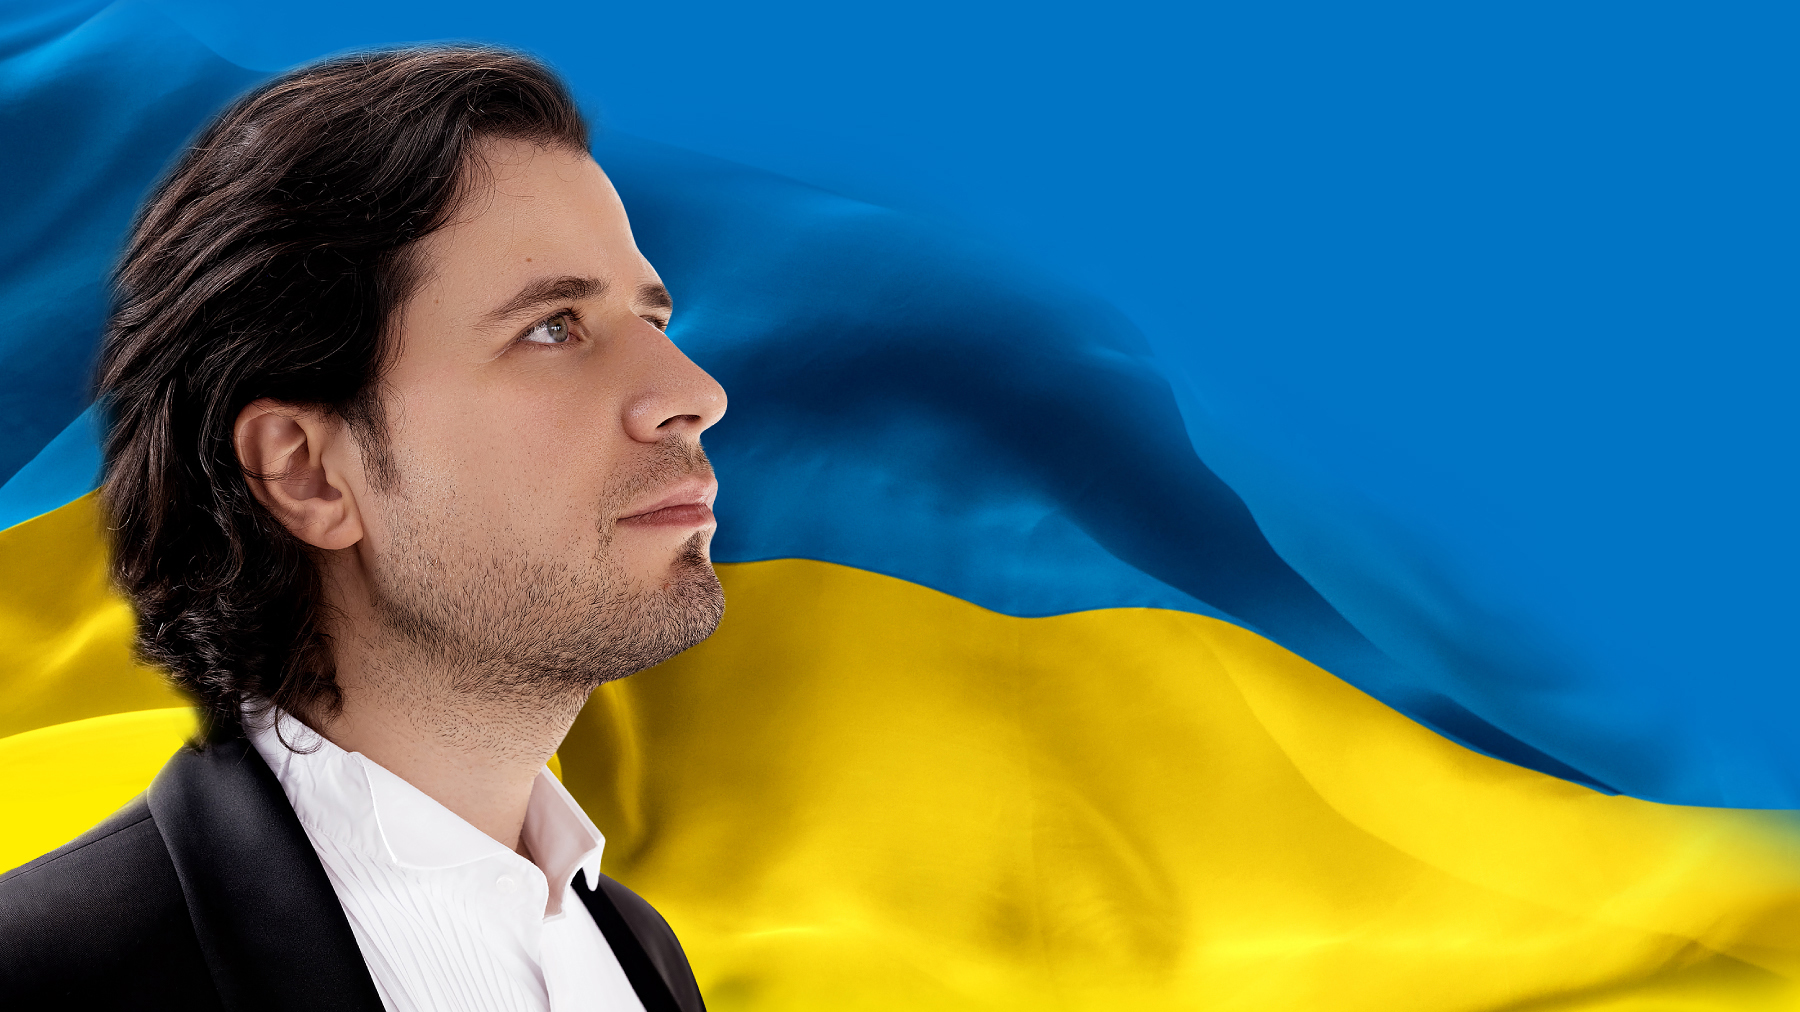 Ar koncertiem, ziedojumu akciju un jauniem dalībniekiem papildināta Osokina Brīvības festivāla Ukrainai programma